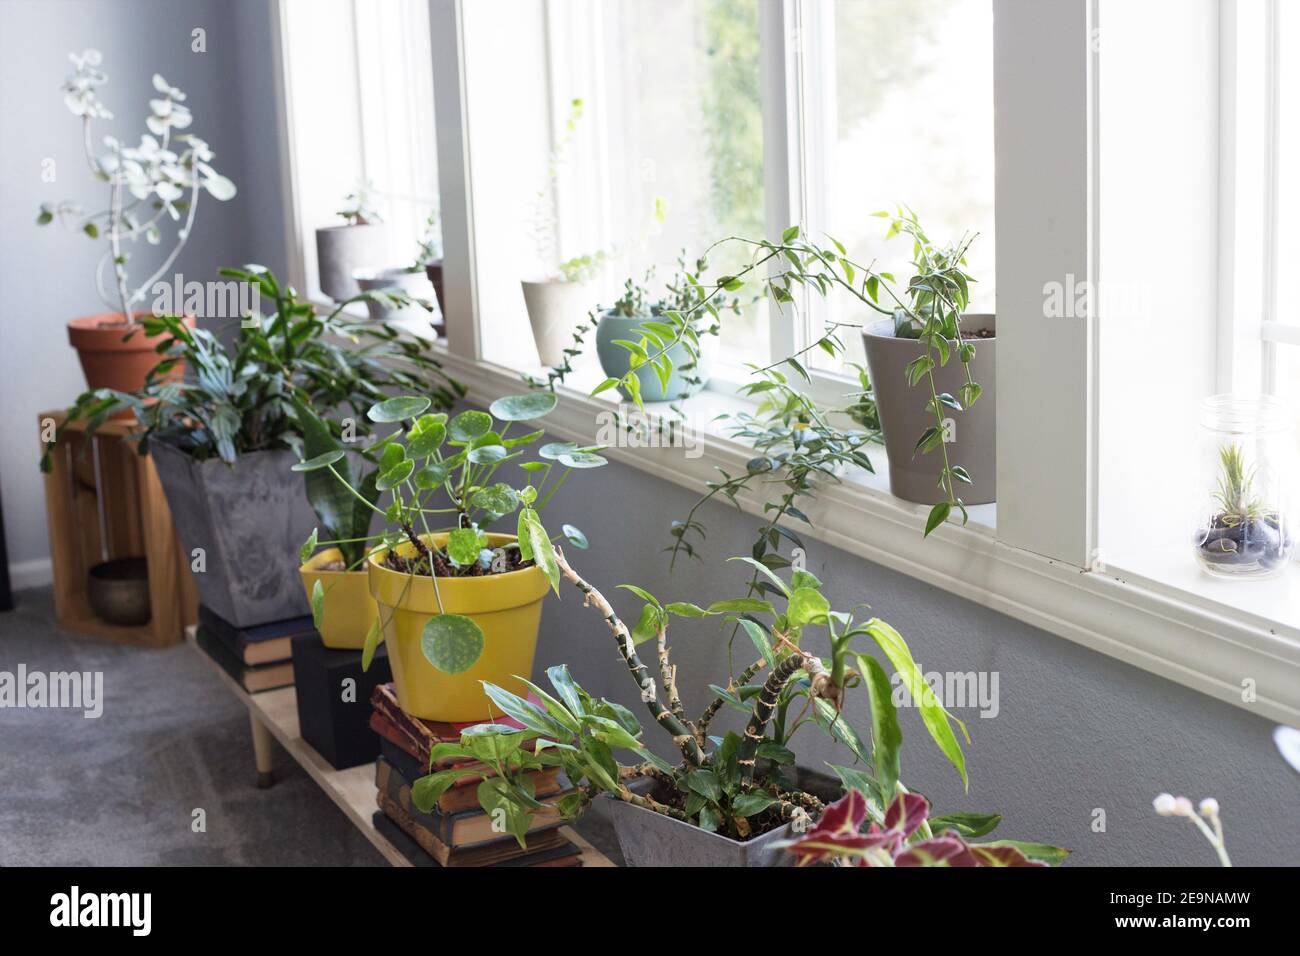 Plantes de maison dans des pots dans la fenêtre d'une maison. Banque D'Images